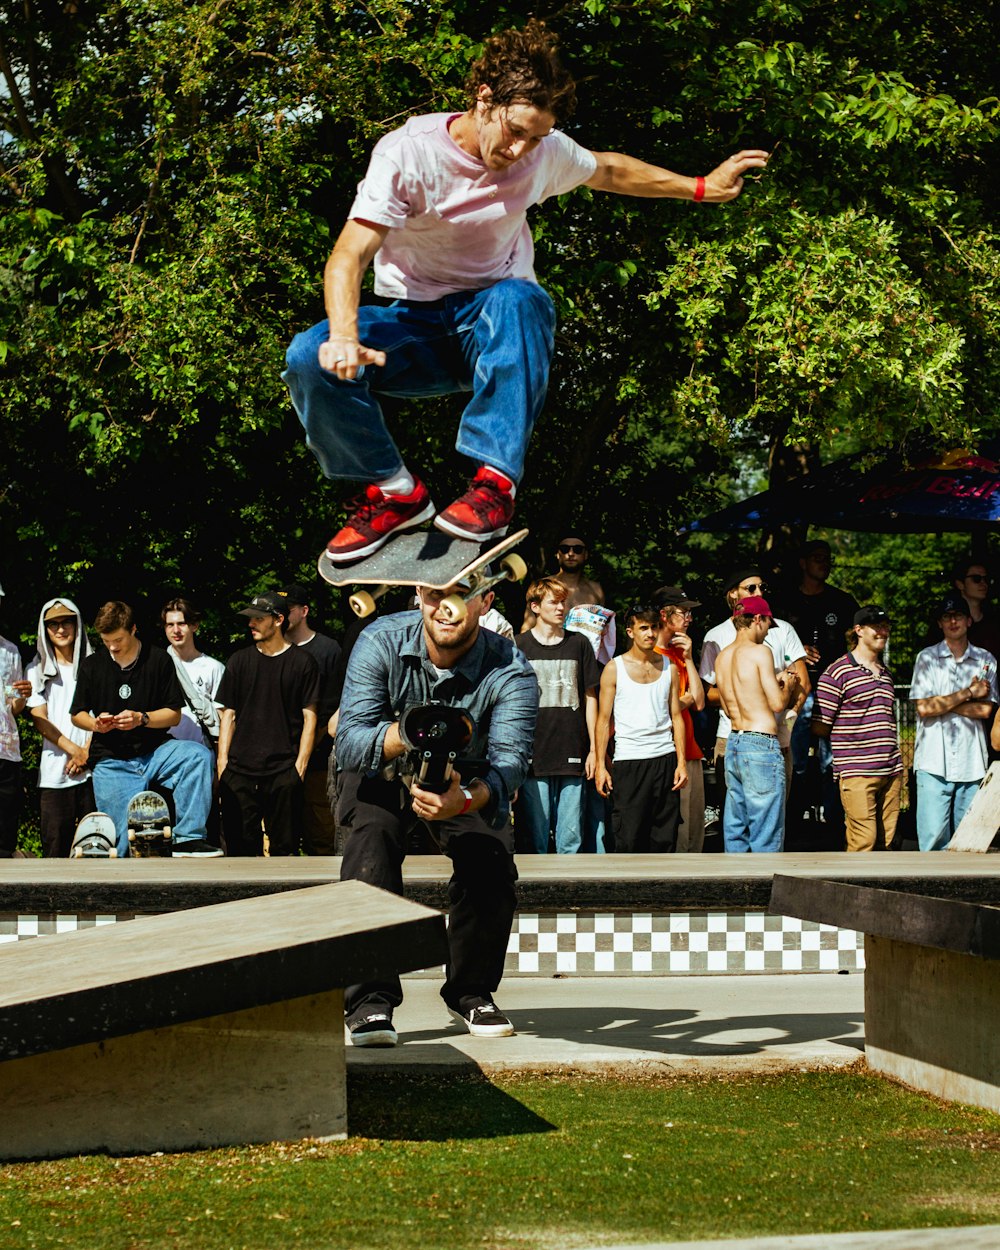 Ein Mann springt mit einem Skateboard in die Luft